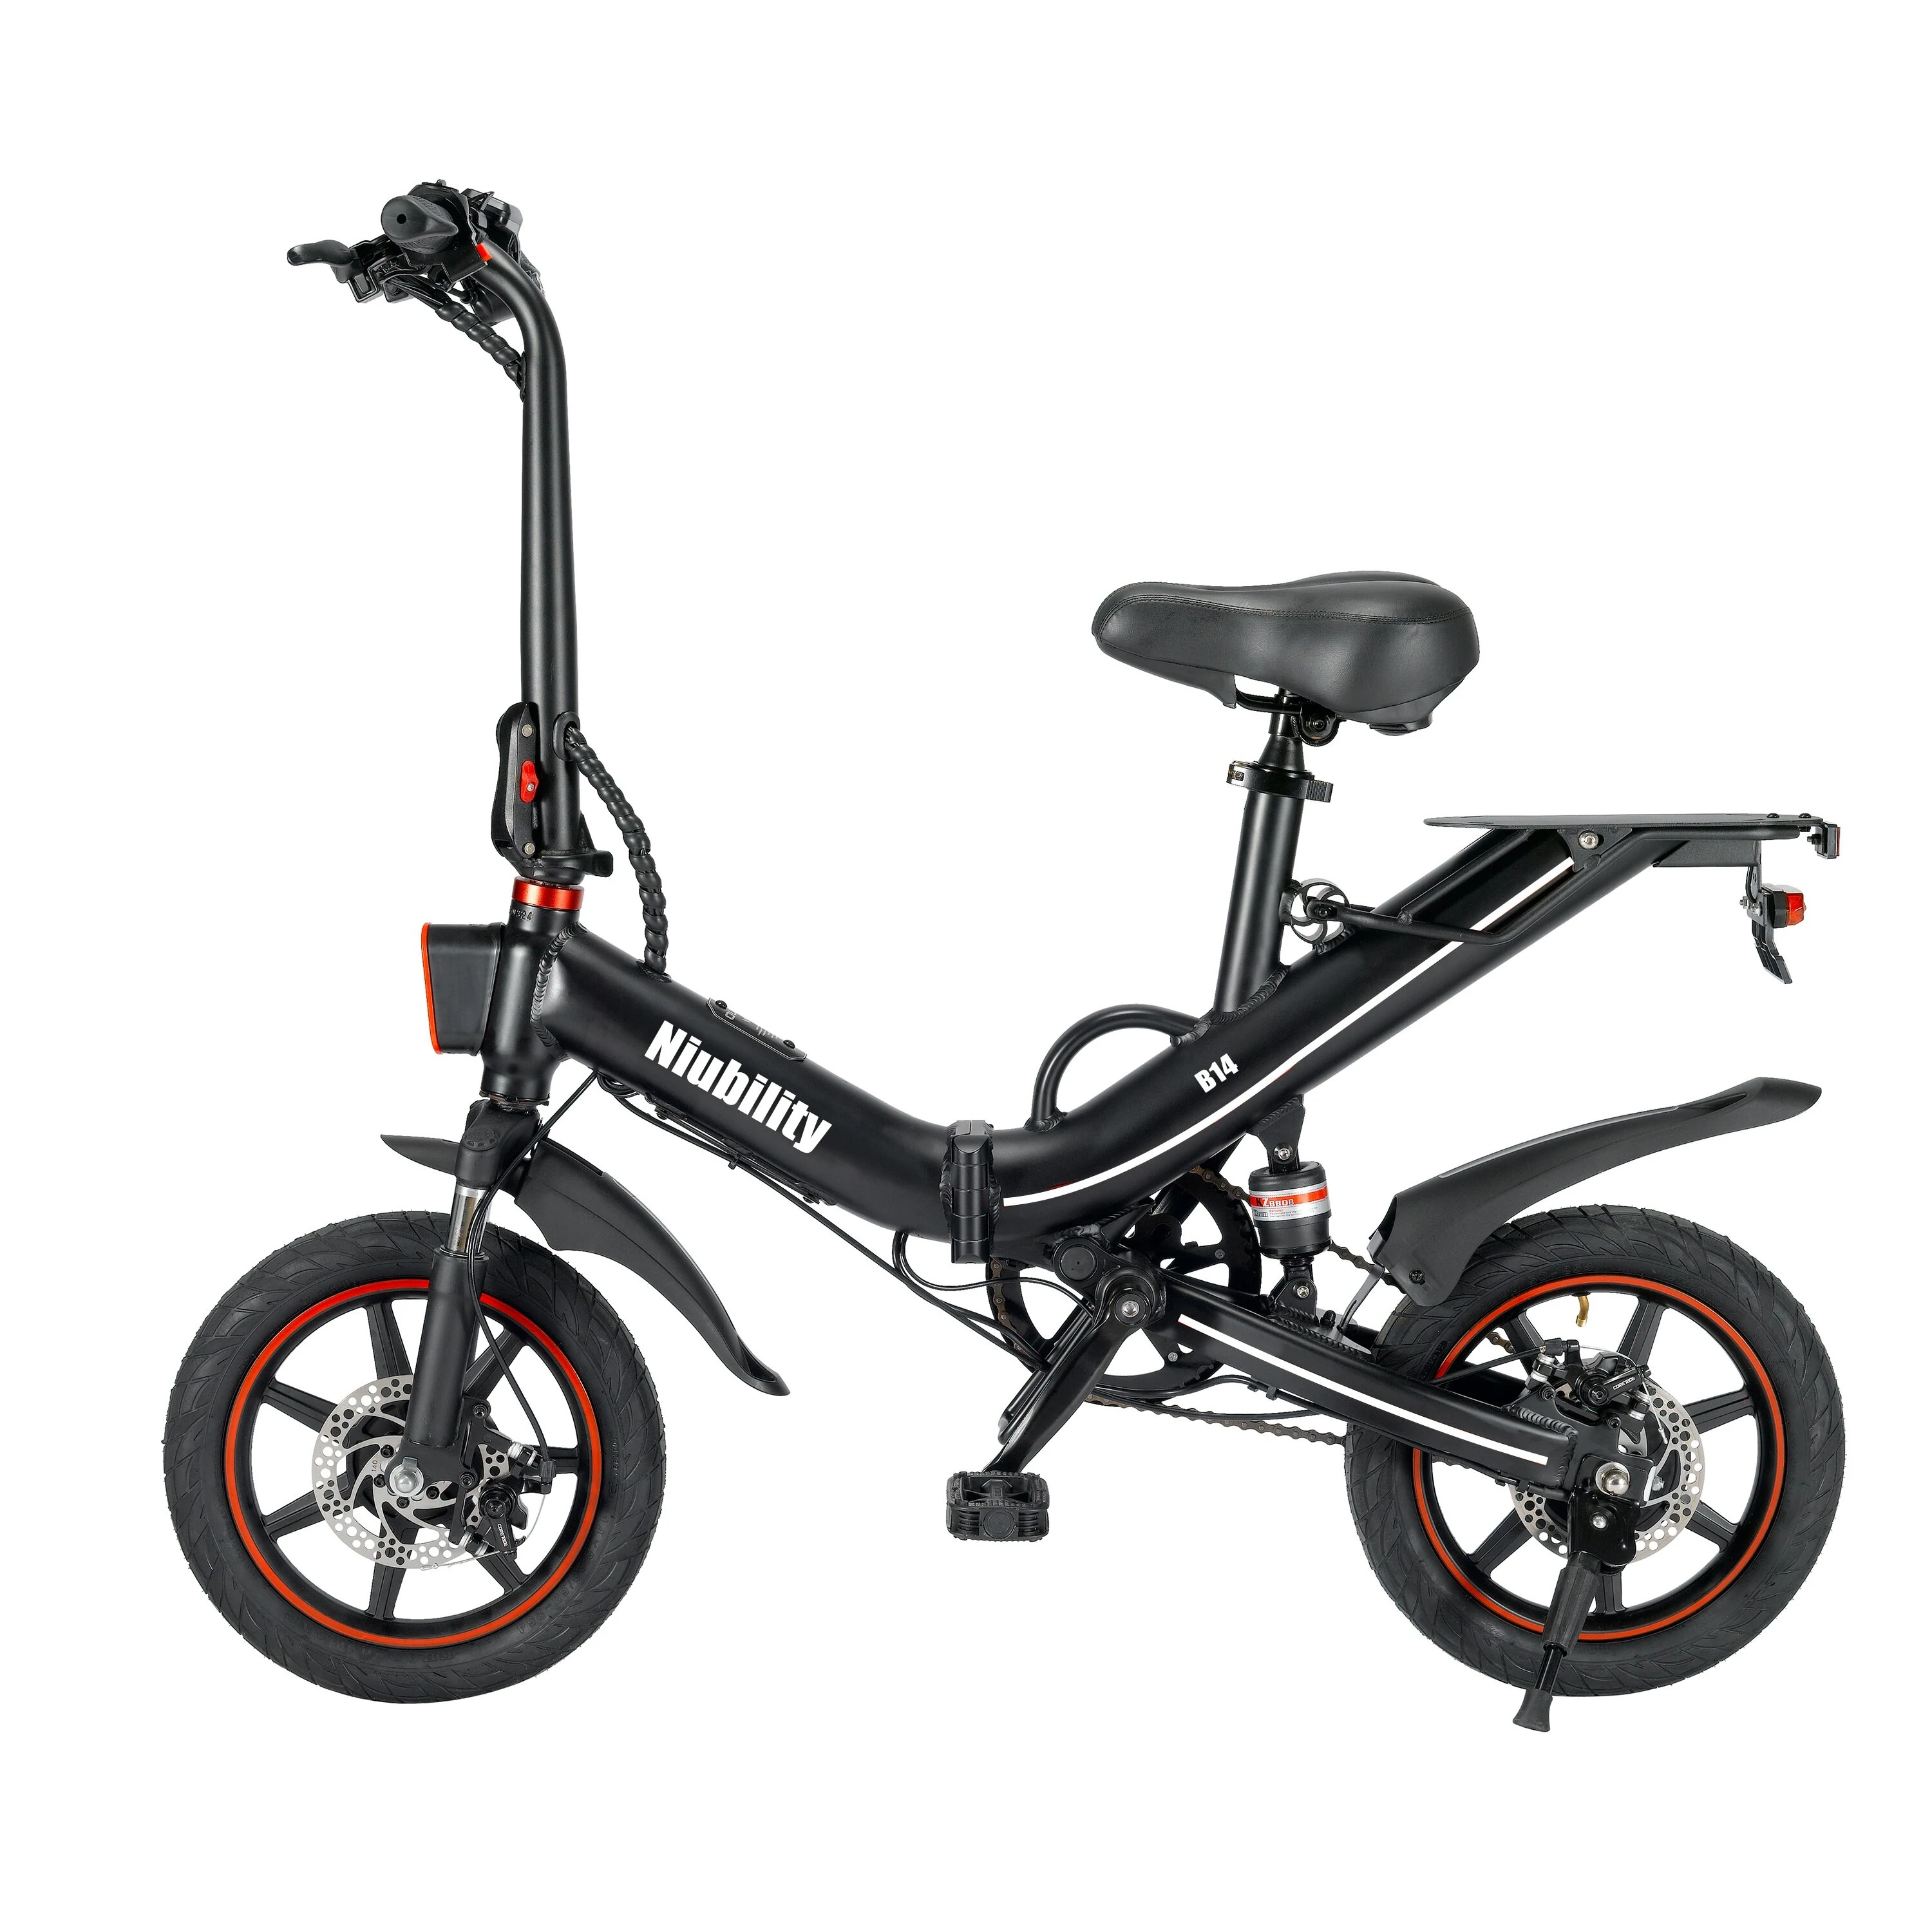 Niubility B14 – Bici da 400 watt al prezzo di uno scooter